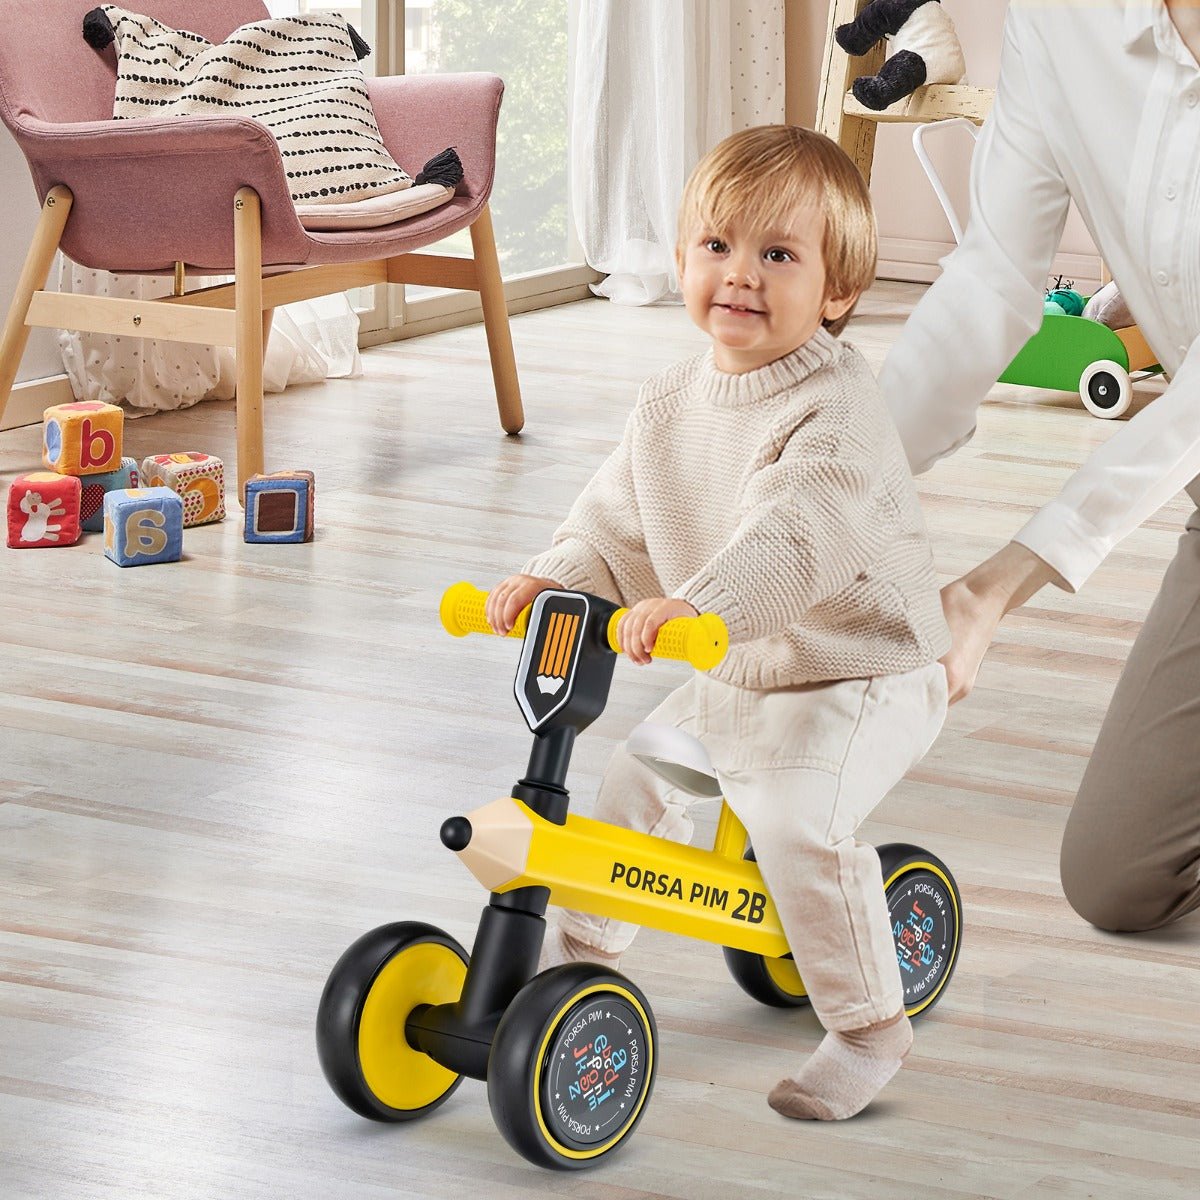 Baby Balance Bike with Quiet EVA Wheels - Toddler's First Adventure